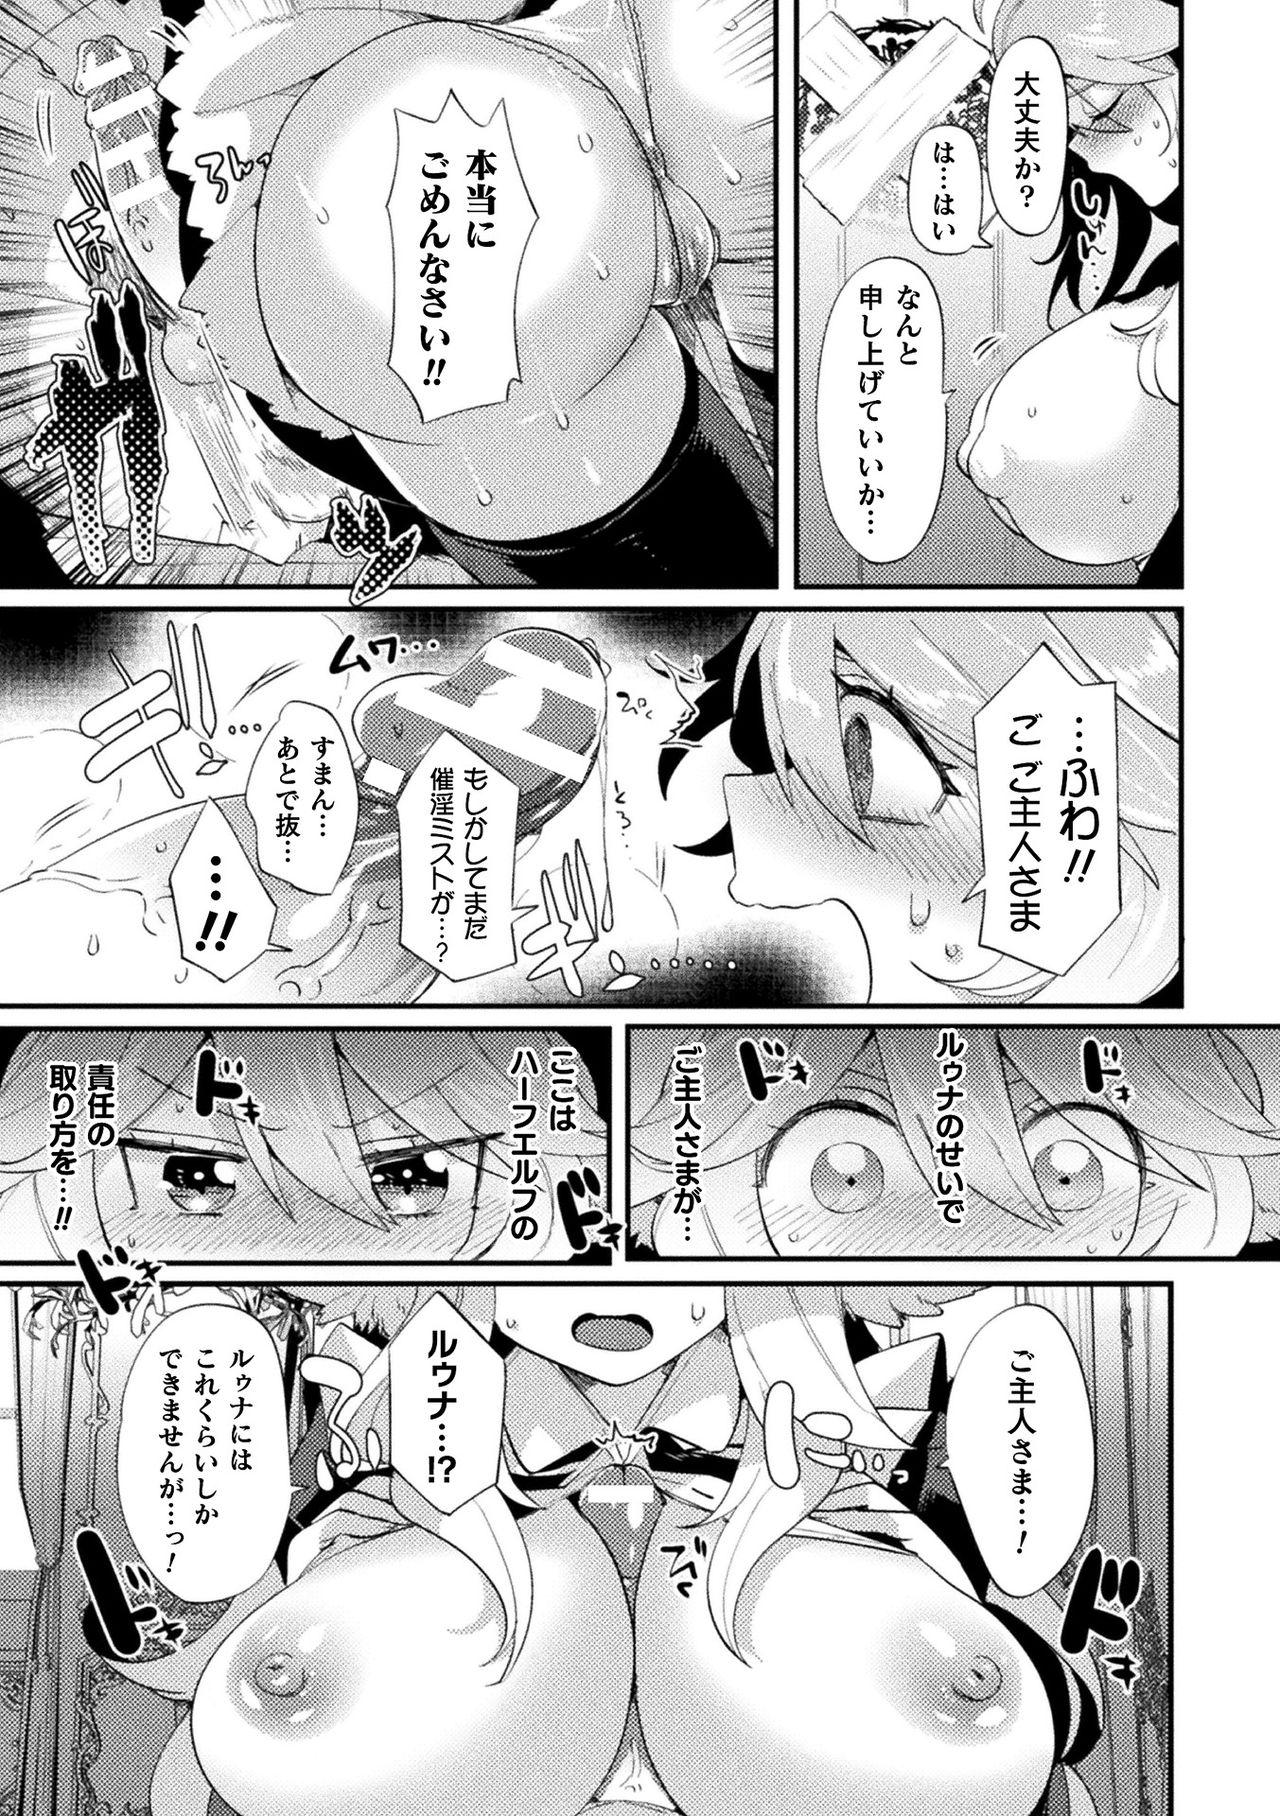 [Anthology] Bessatsu Comic Unreal Ponkotsu Fantasy Heroine H ~Doji o Funde Gyakuten Saretari Ero Trap ni Hamattari!?~ Vol. 1 [Digital] 13